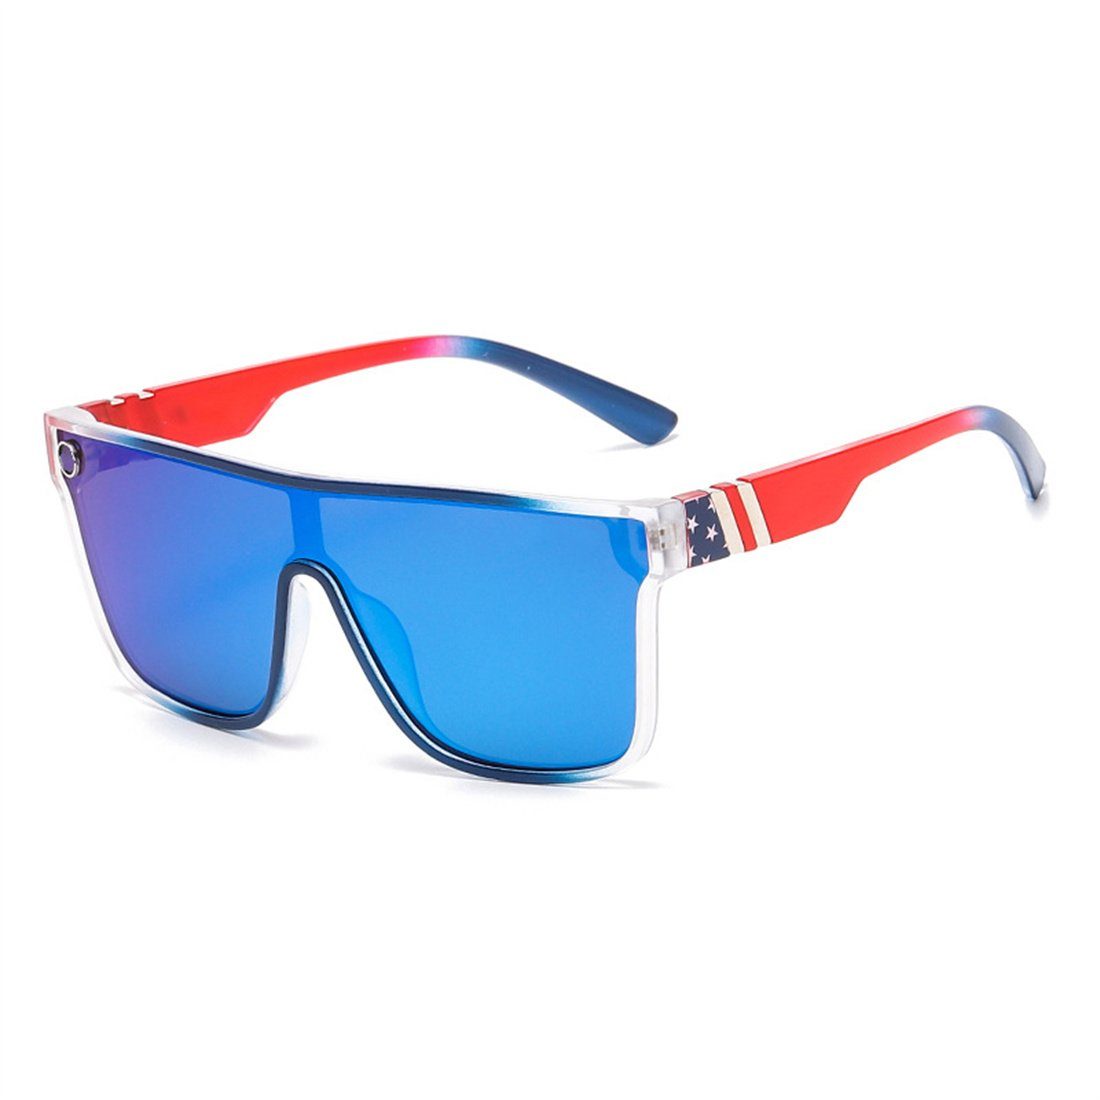 für Frauen, Männer und Outdoor-Sonnenbrillen Radsport-Sonnenbrillen Sonnenbrille DÖRÖY